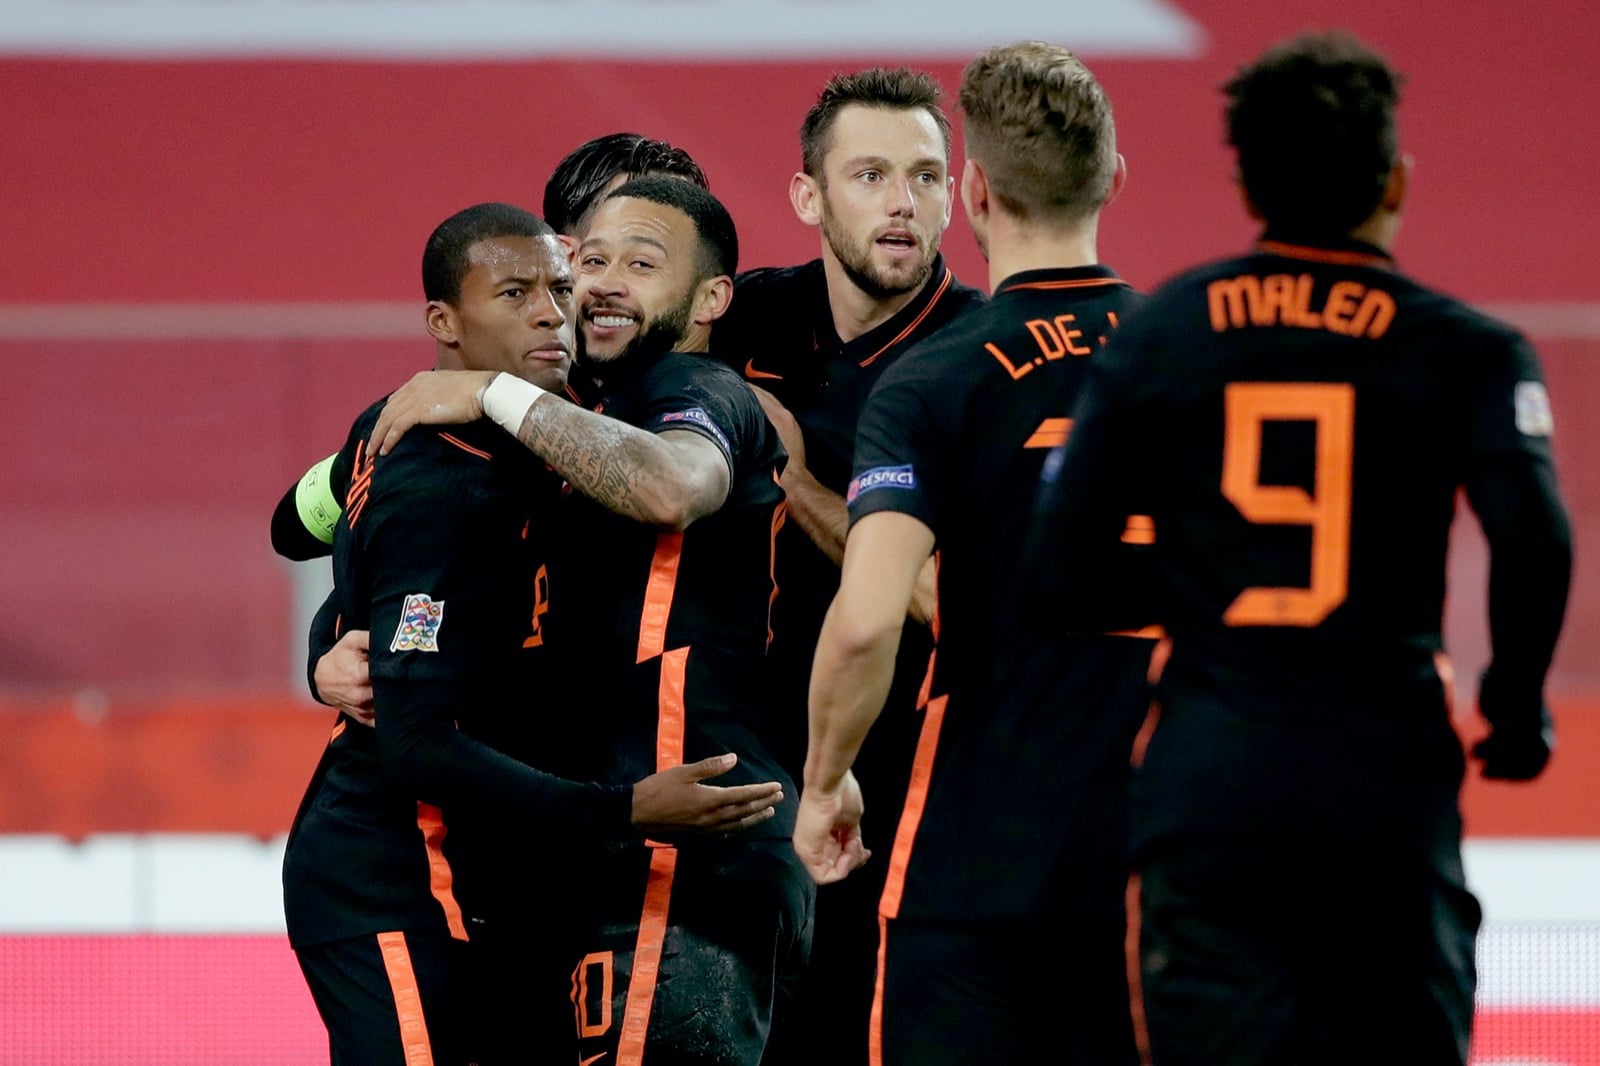 Ολλανδία γκολ Ντεπάι Βαϊνάλντουμ Μάλεν στοίχημα εθνικές ομάδες